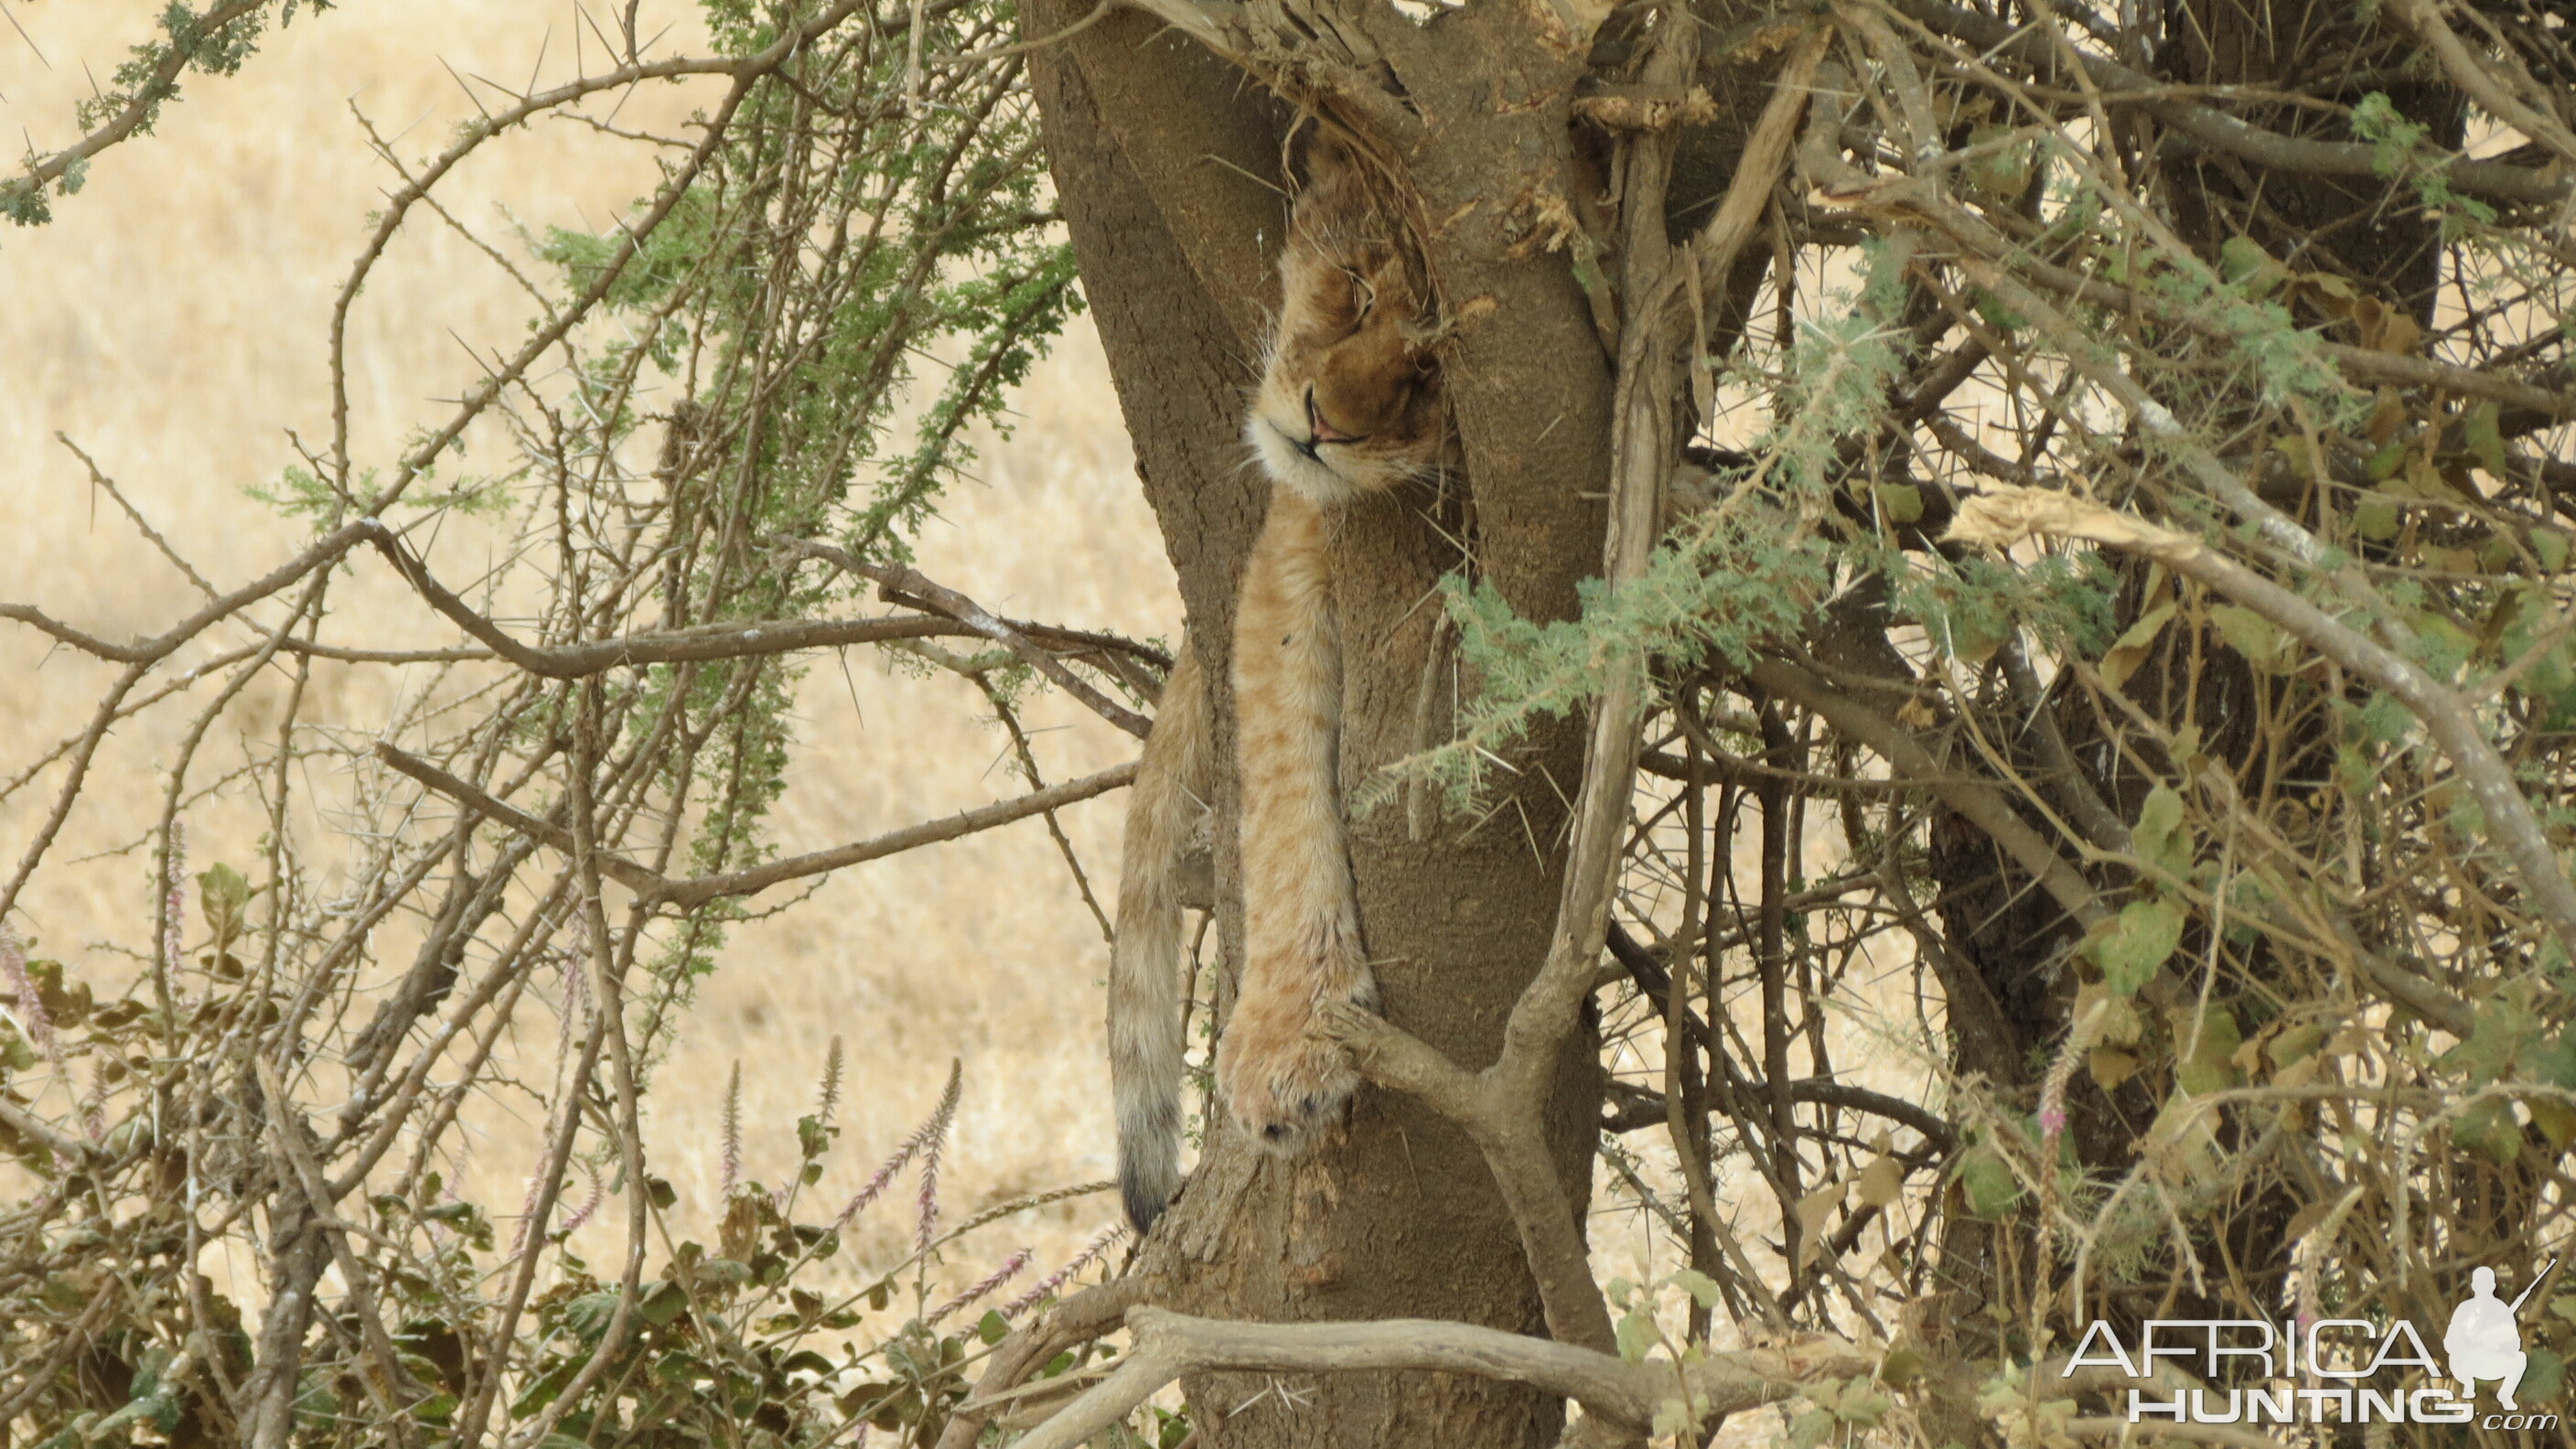 Lion cub sleeping in a tree